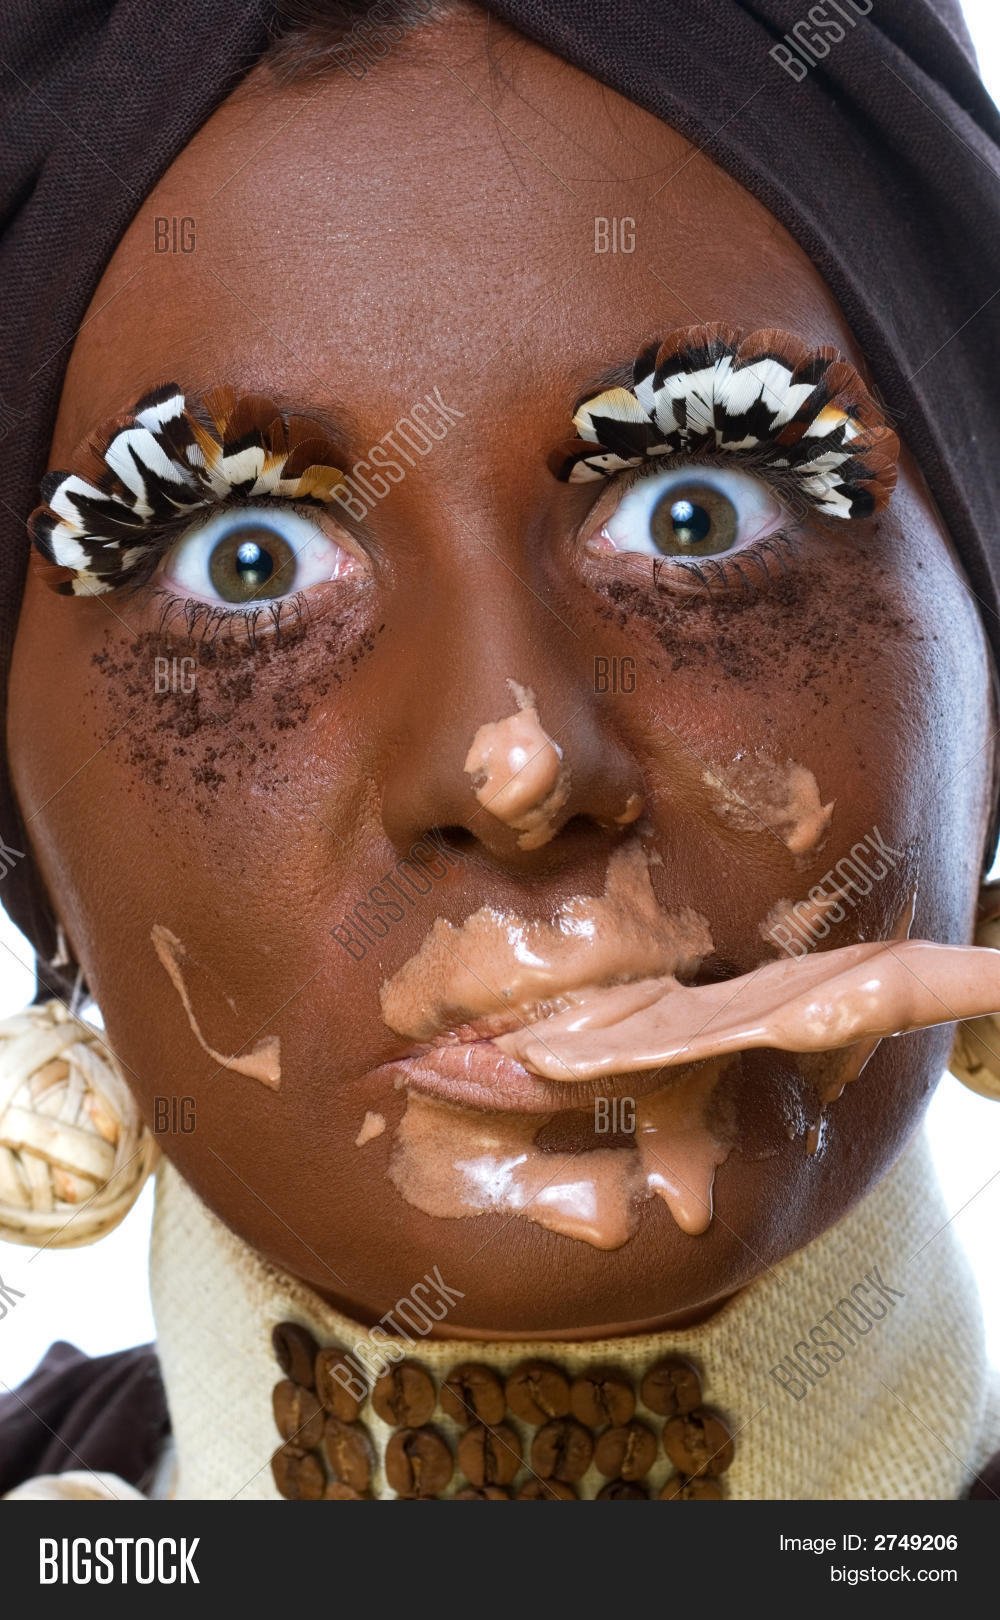 Негритянка ест. Девочка с лицом в шоколаде. Девушка обмазанная шоколадом. Лицо измазанное шоколадом.